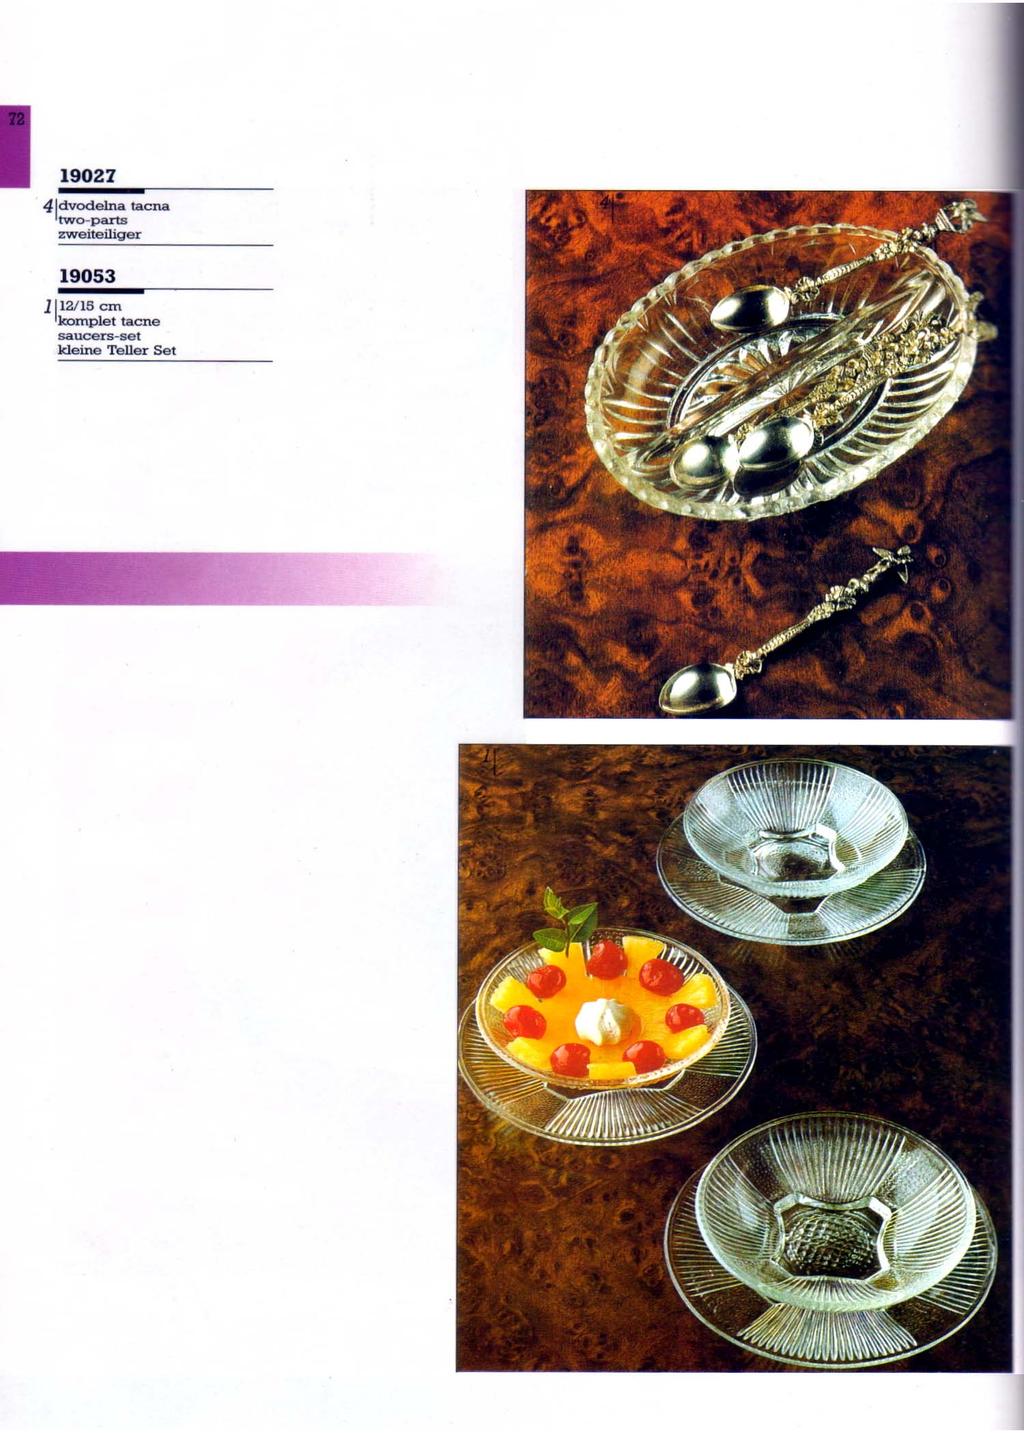 Abb. 2013-1-03/16 MB Pressglas Serbische Glasfabrik Paraćin 1991, Seite 72, Zweiteilige